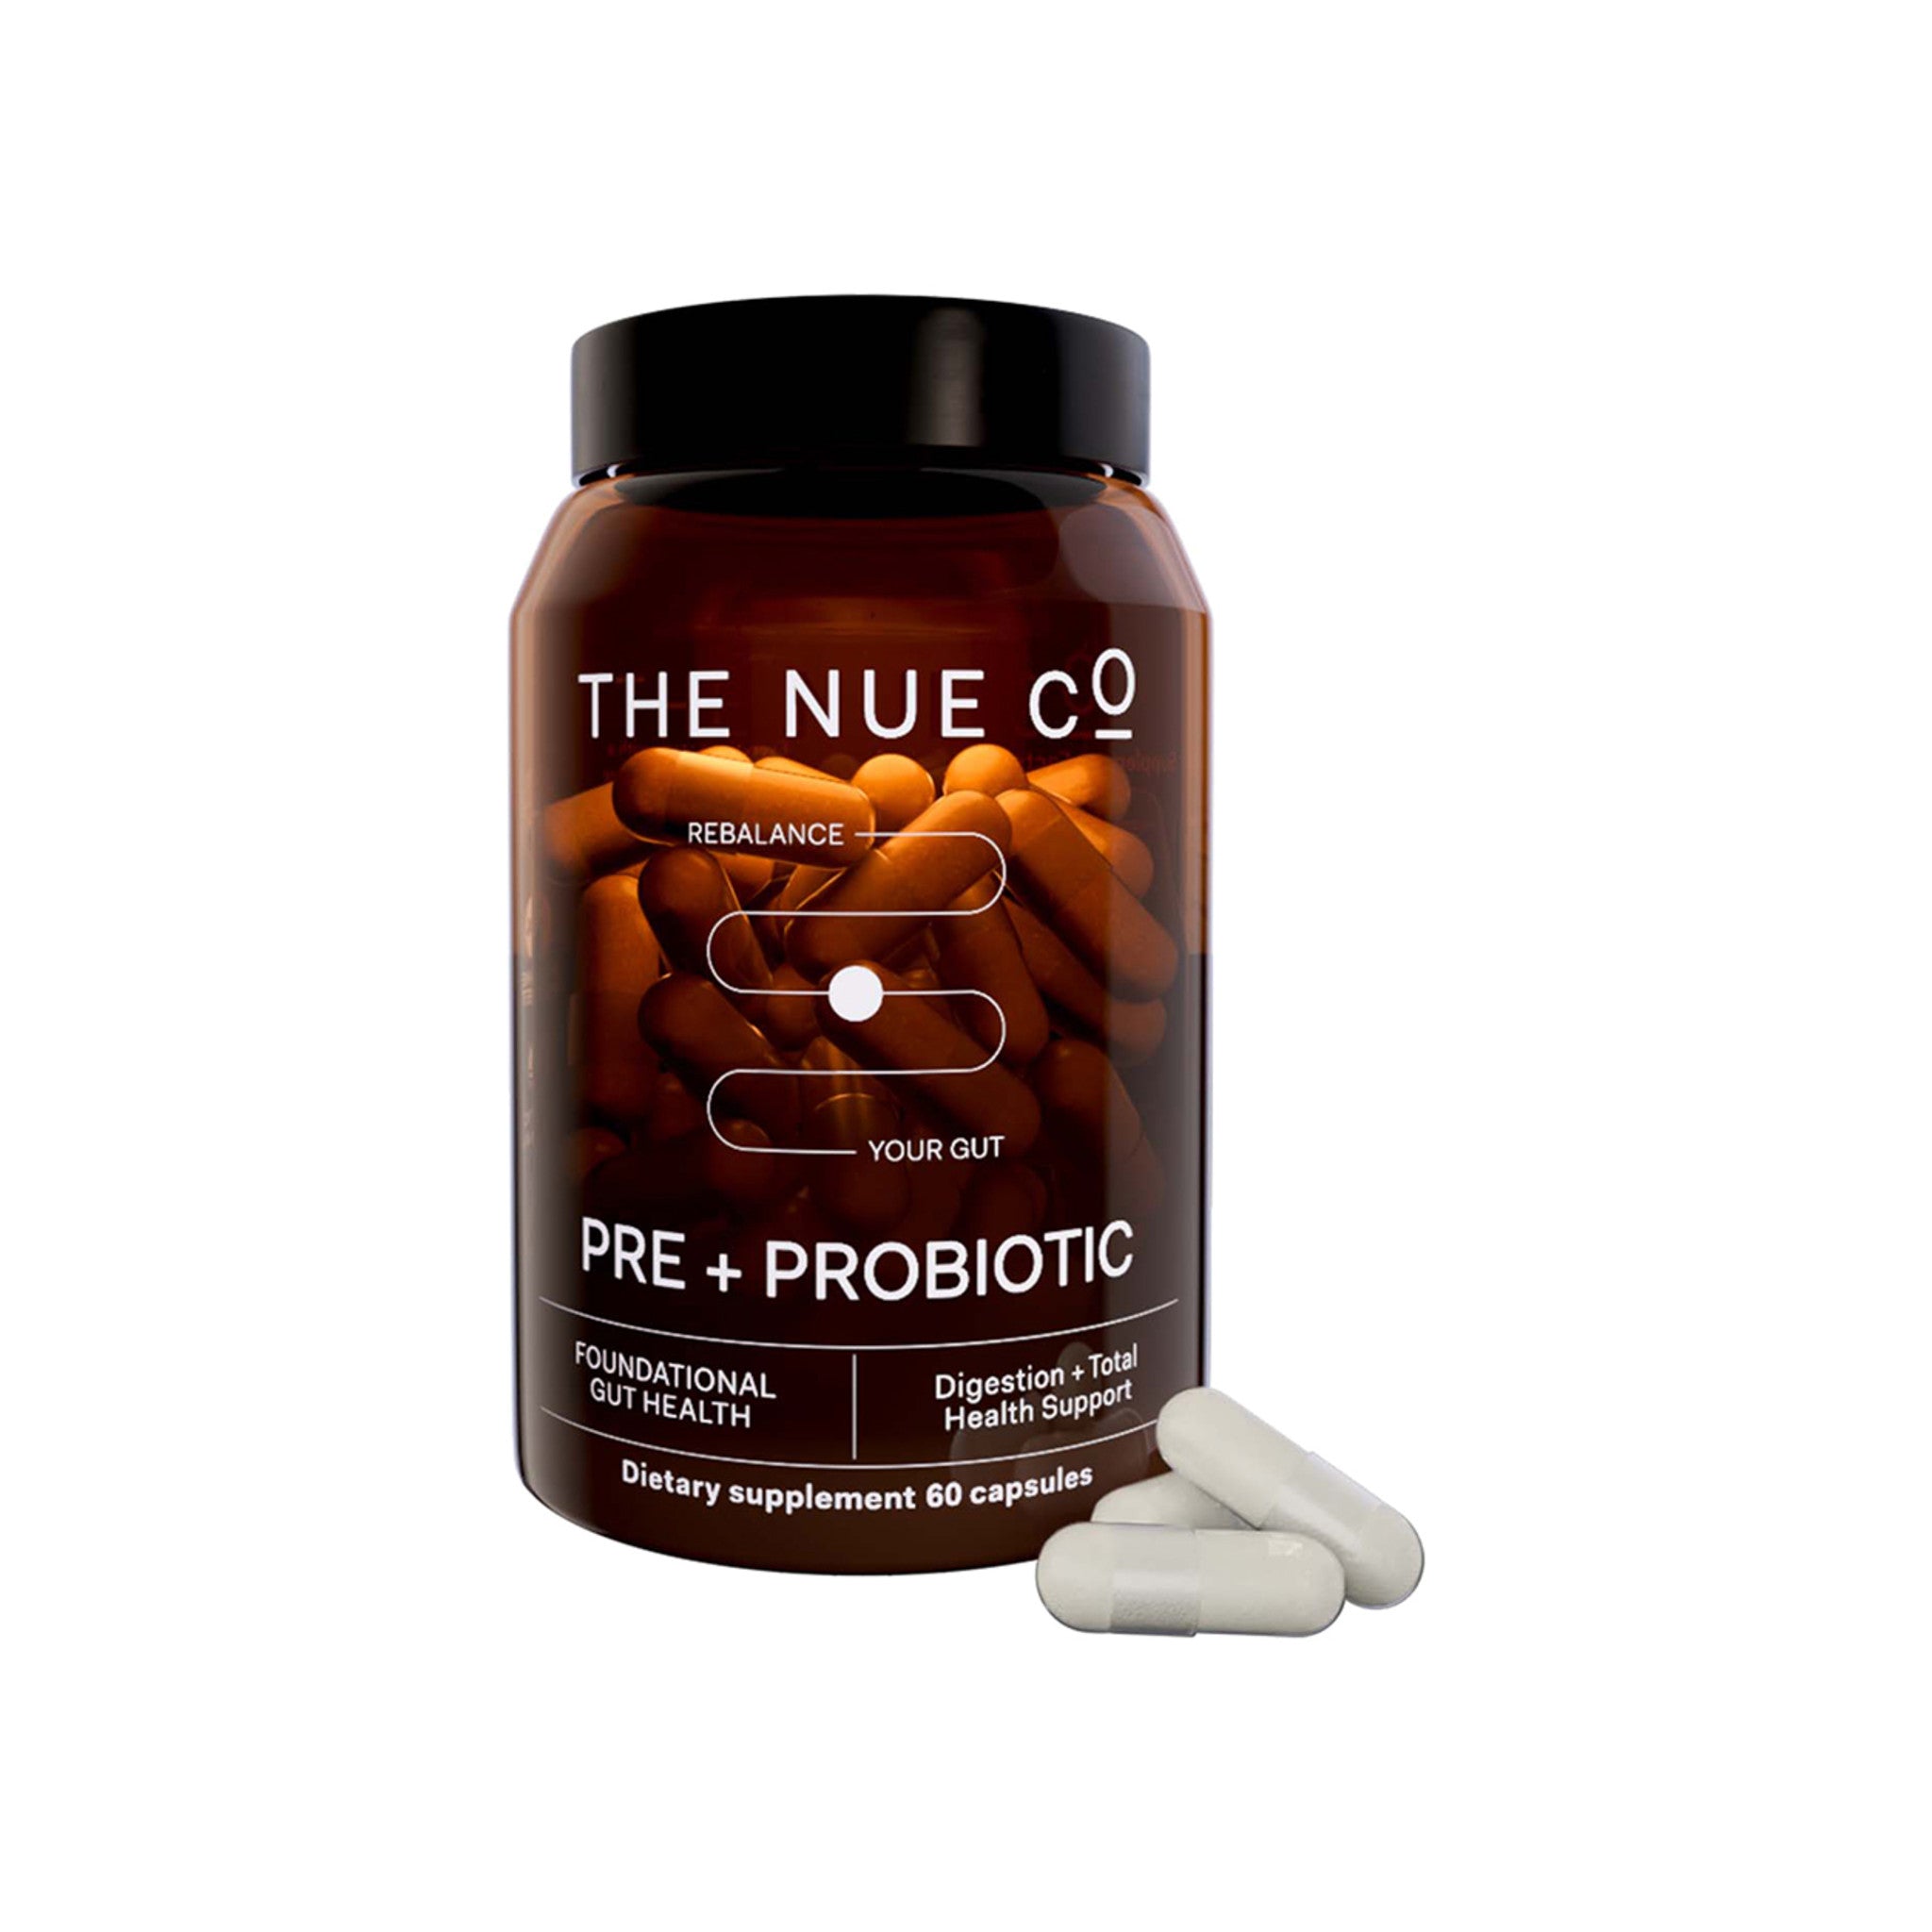 The Nue Co Prebiotic + Probiotic main image.